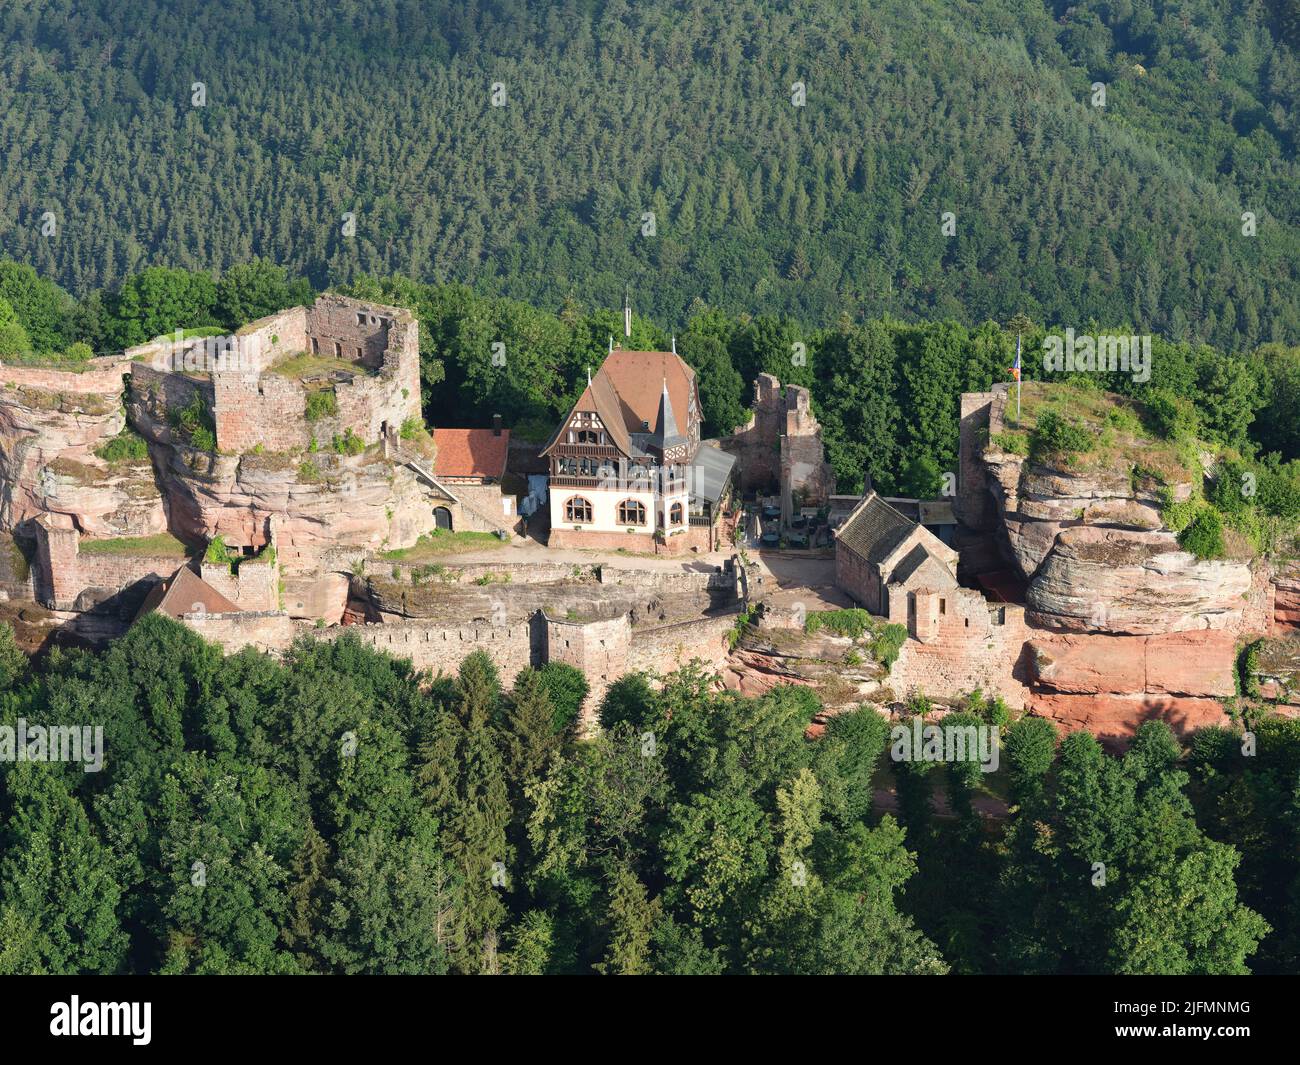 VUE AÉRIENNE. Ruines d'un château médiéval construit sur un affleurement de grès sur les montagnes de l'est des Vosges. Château du Haut-Barr, Saverne, Alsace, France. Banque D'Images